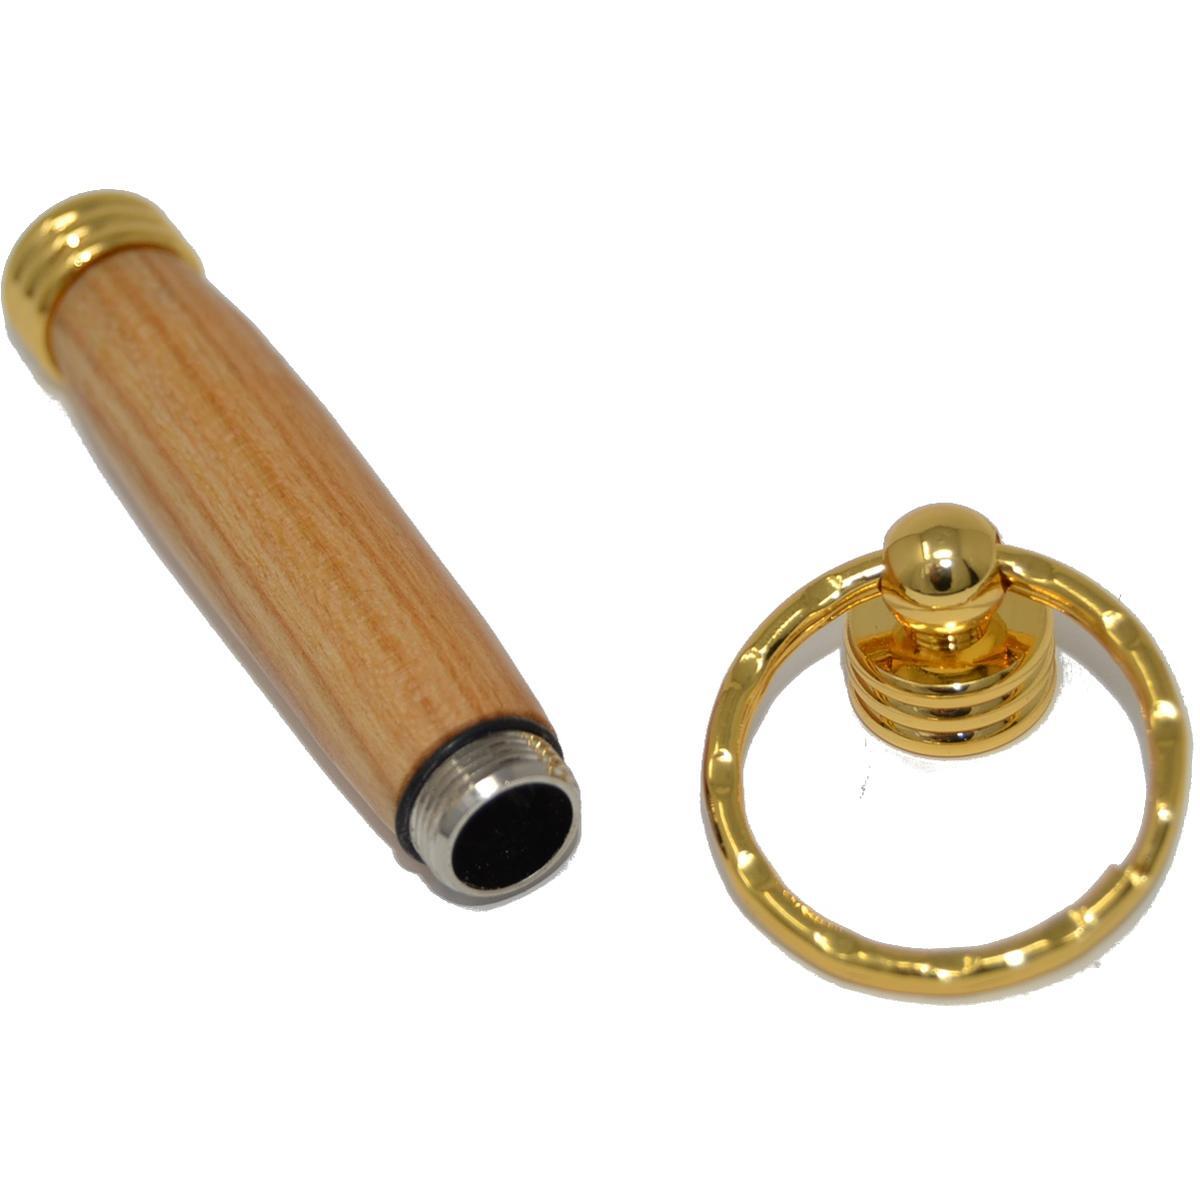 Holz Schlüsselanhänger mit Geheimfach aus Kirsche, vergoldet